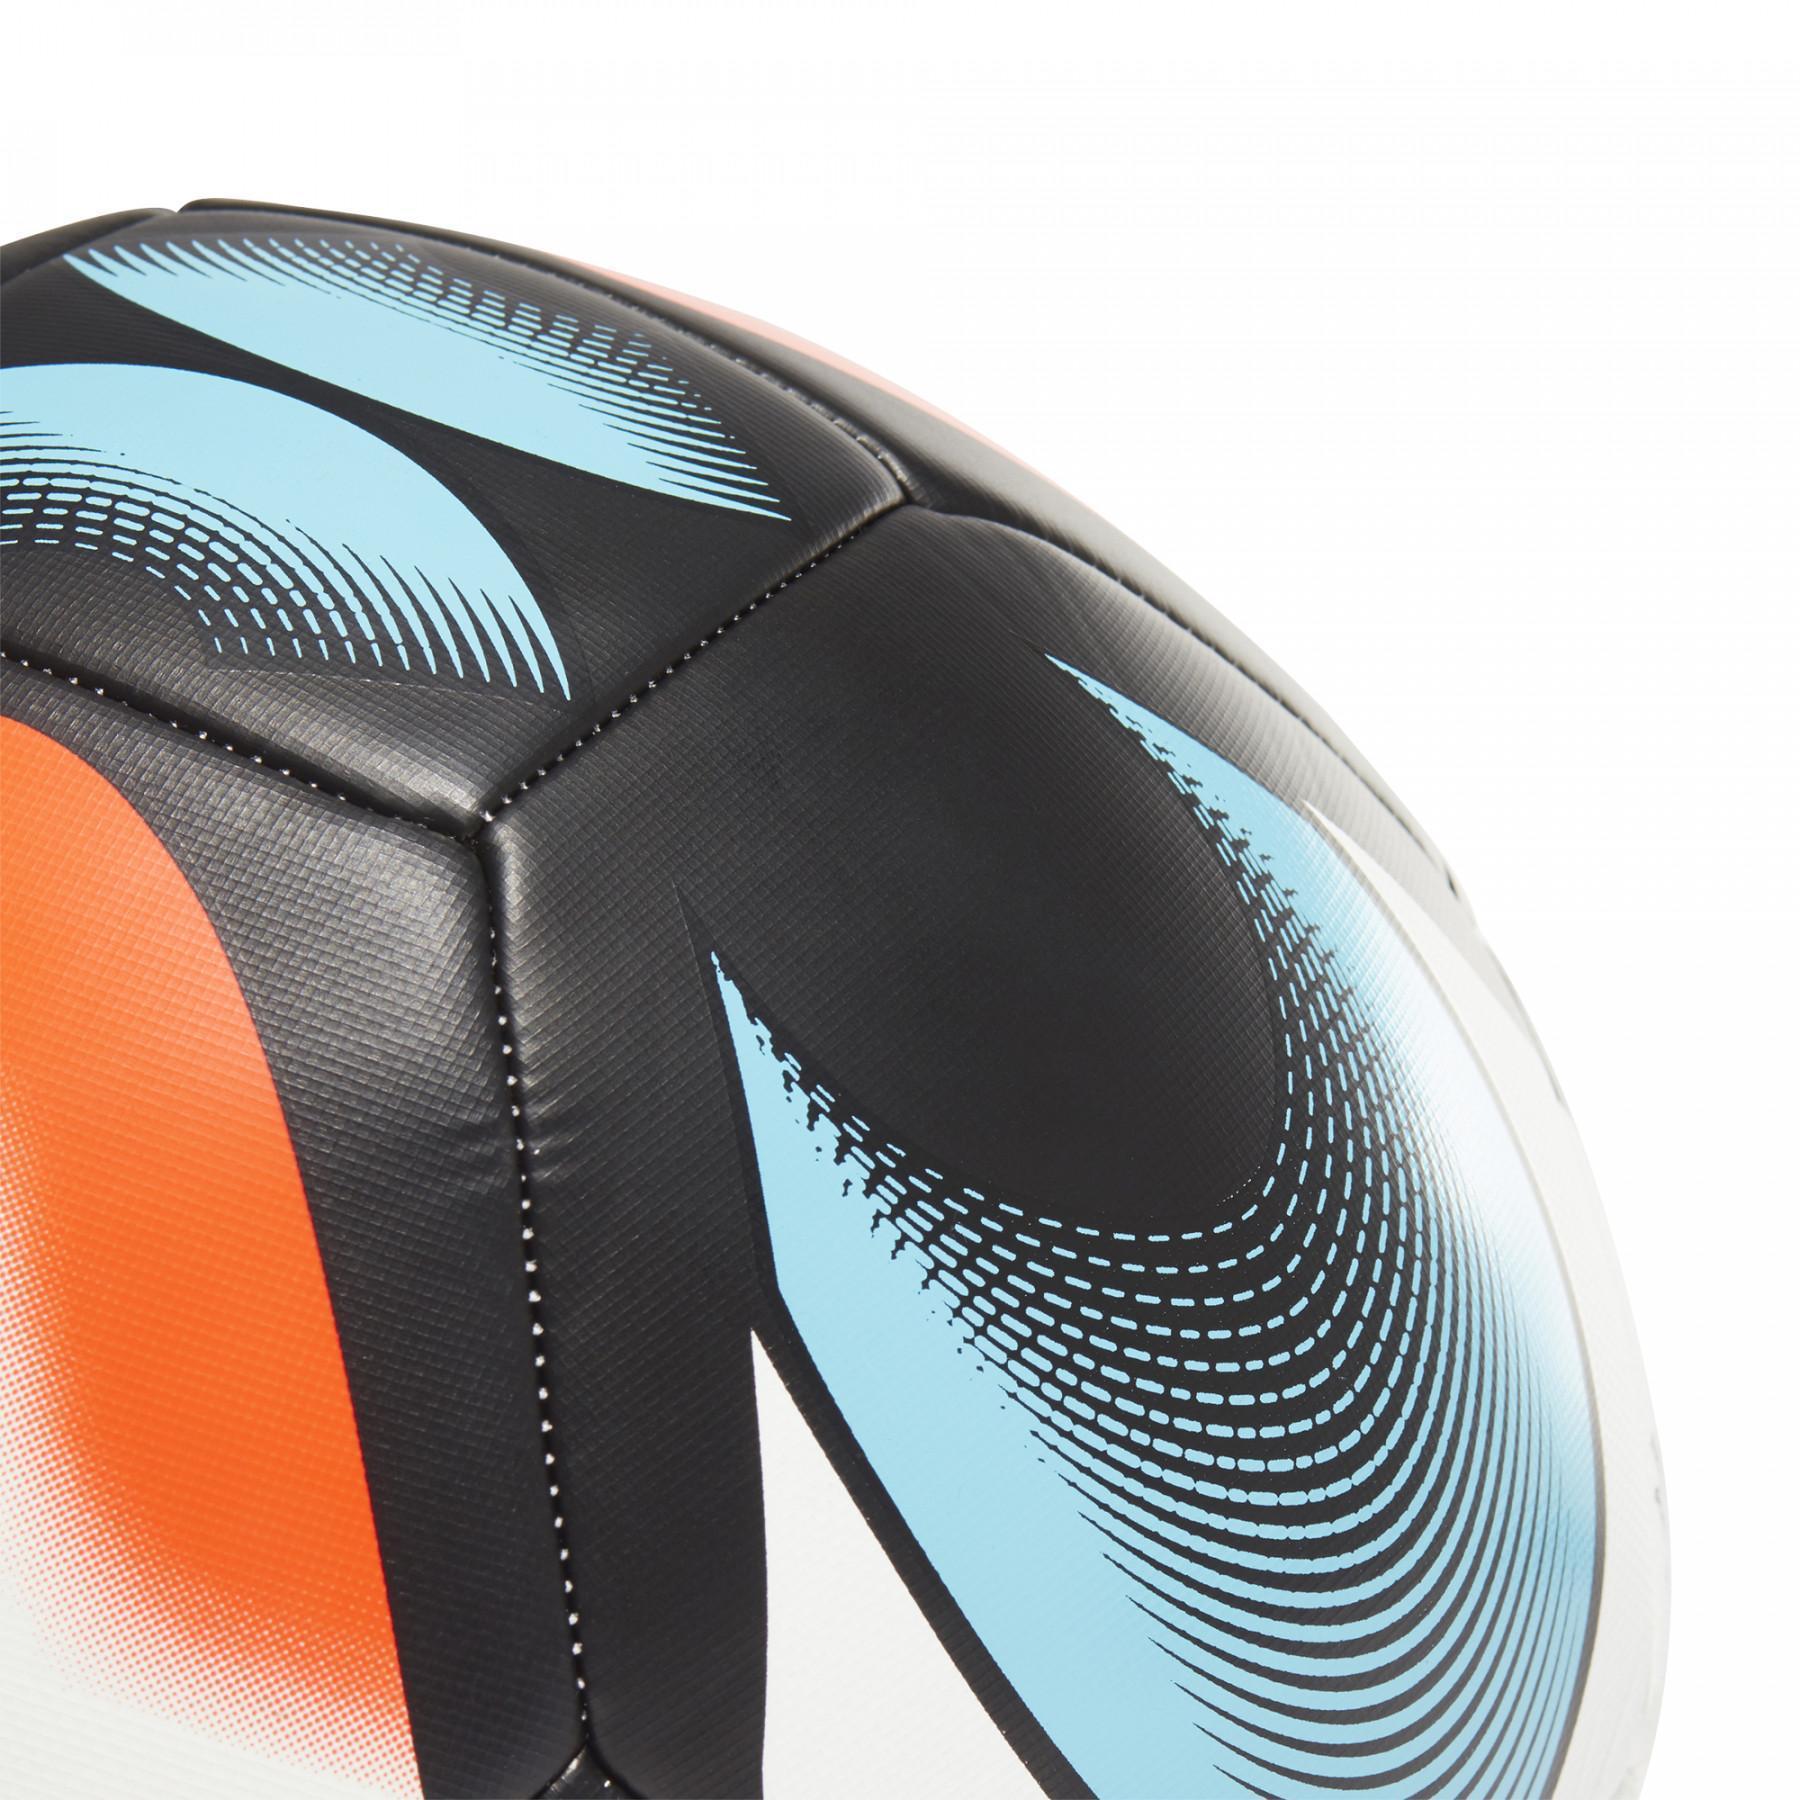 Ballon de football adidas Starlancer Training